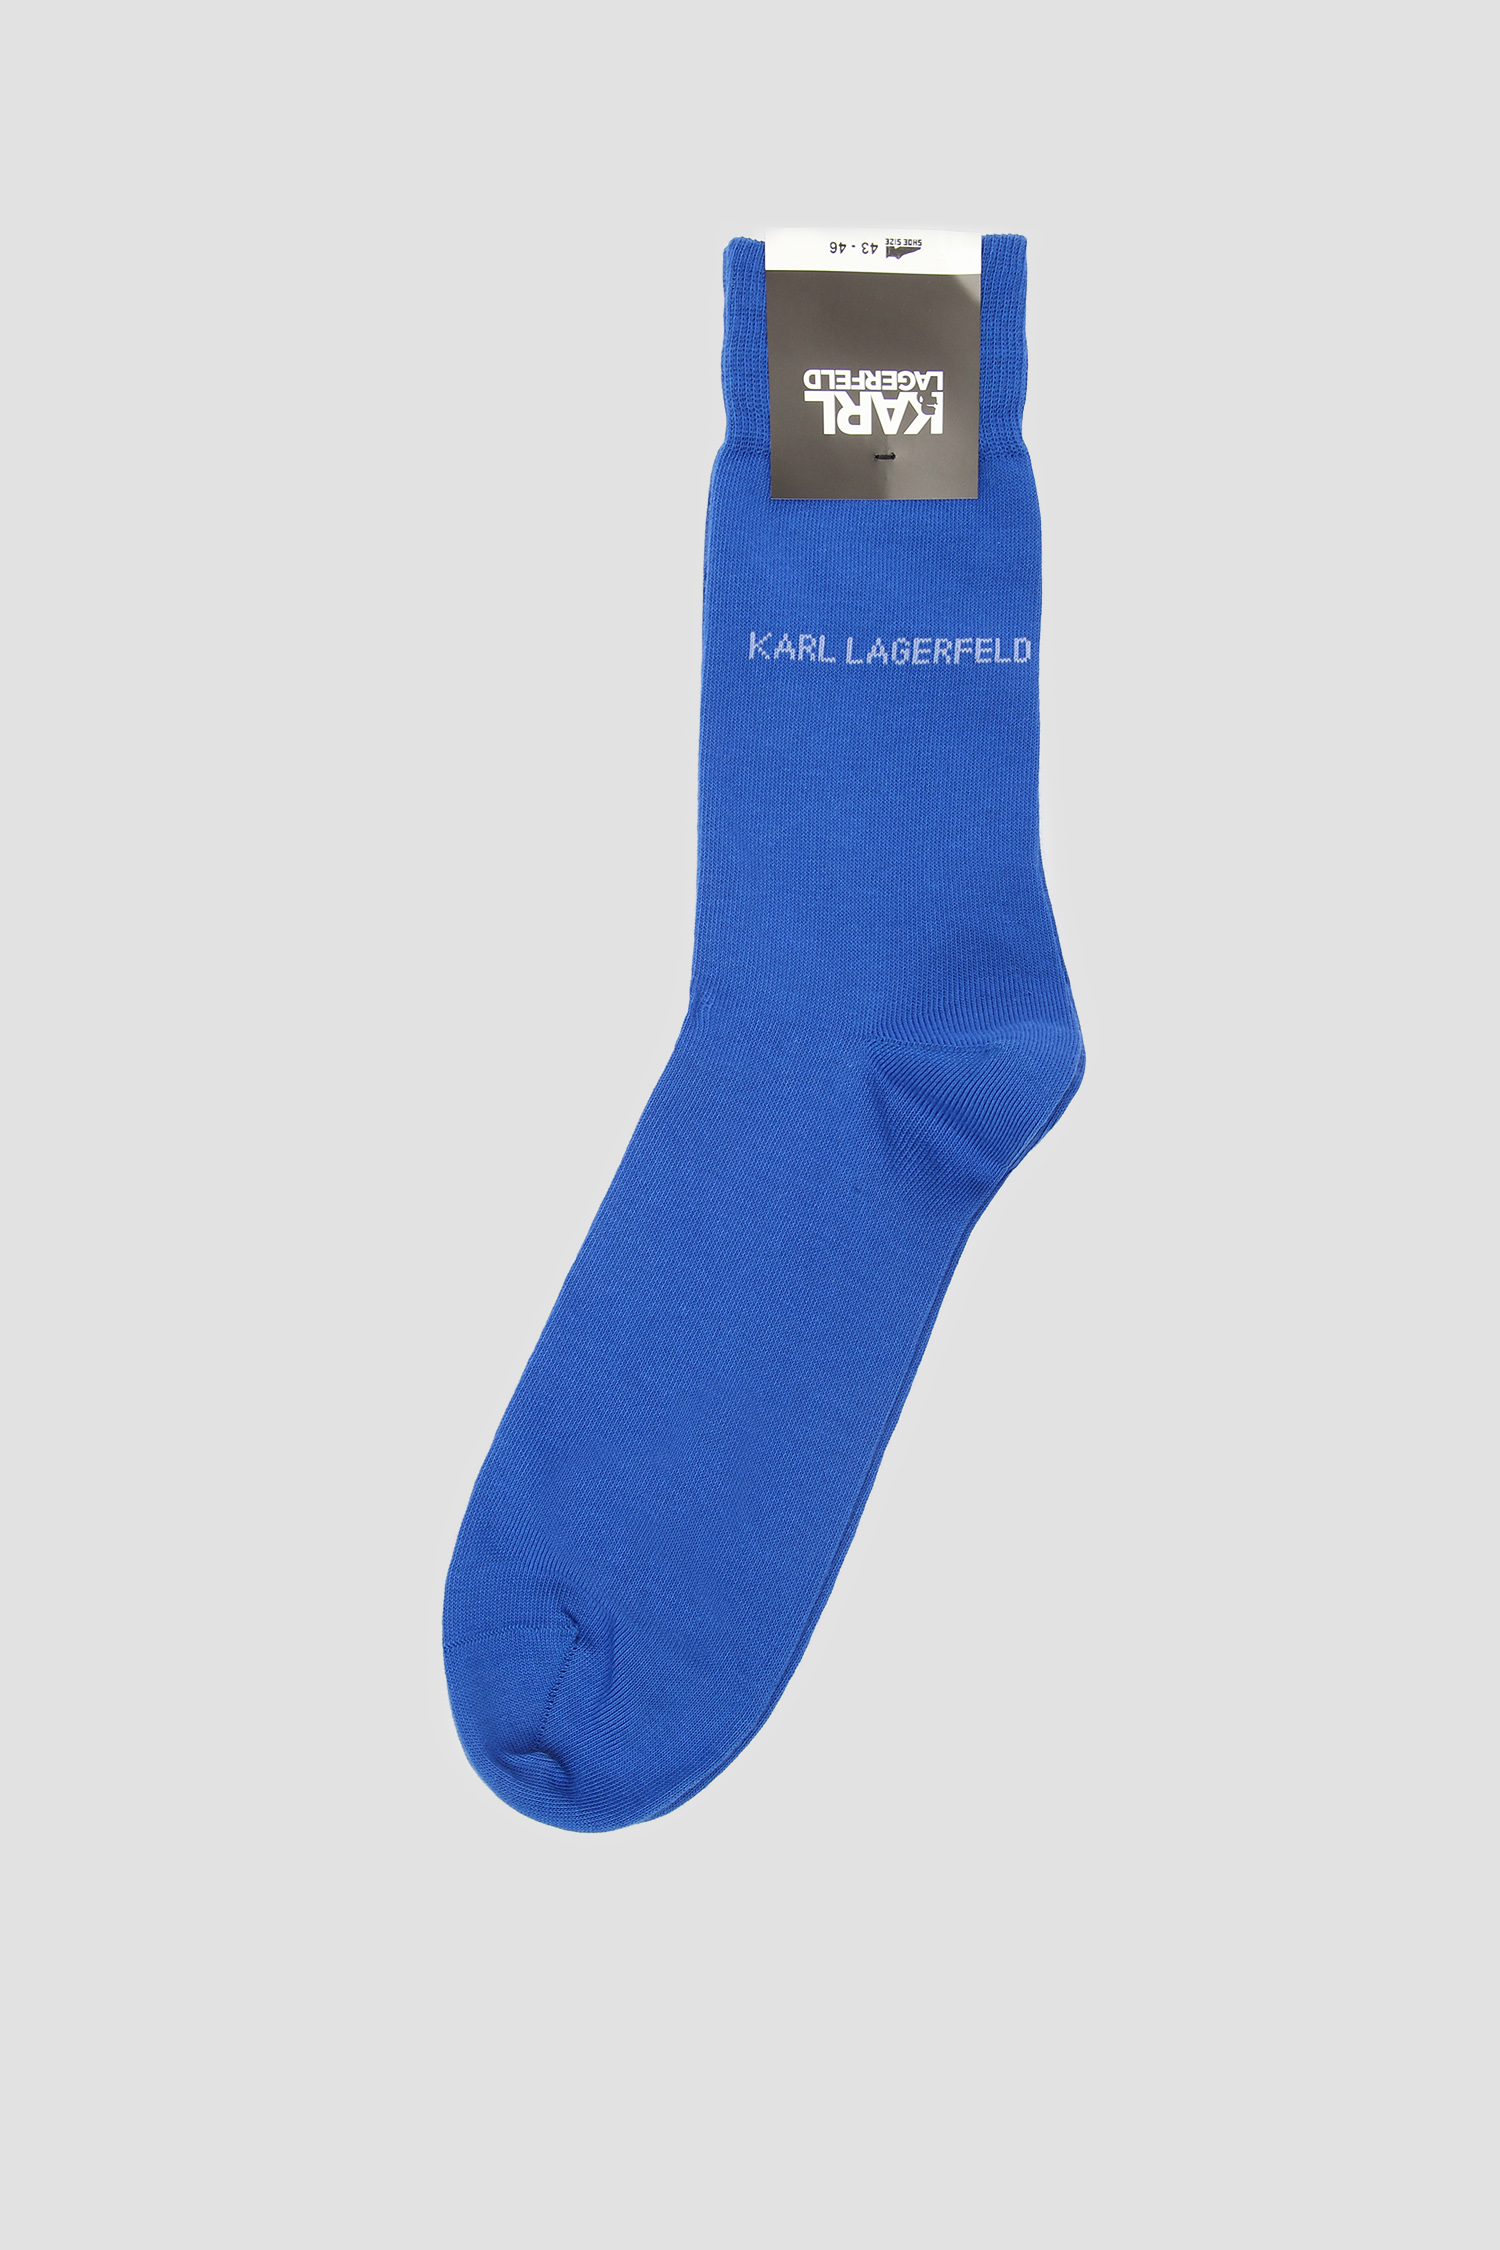 Мужские синие носки Karl Lagerfeld 591101.805501;650